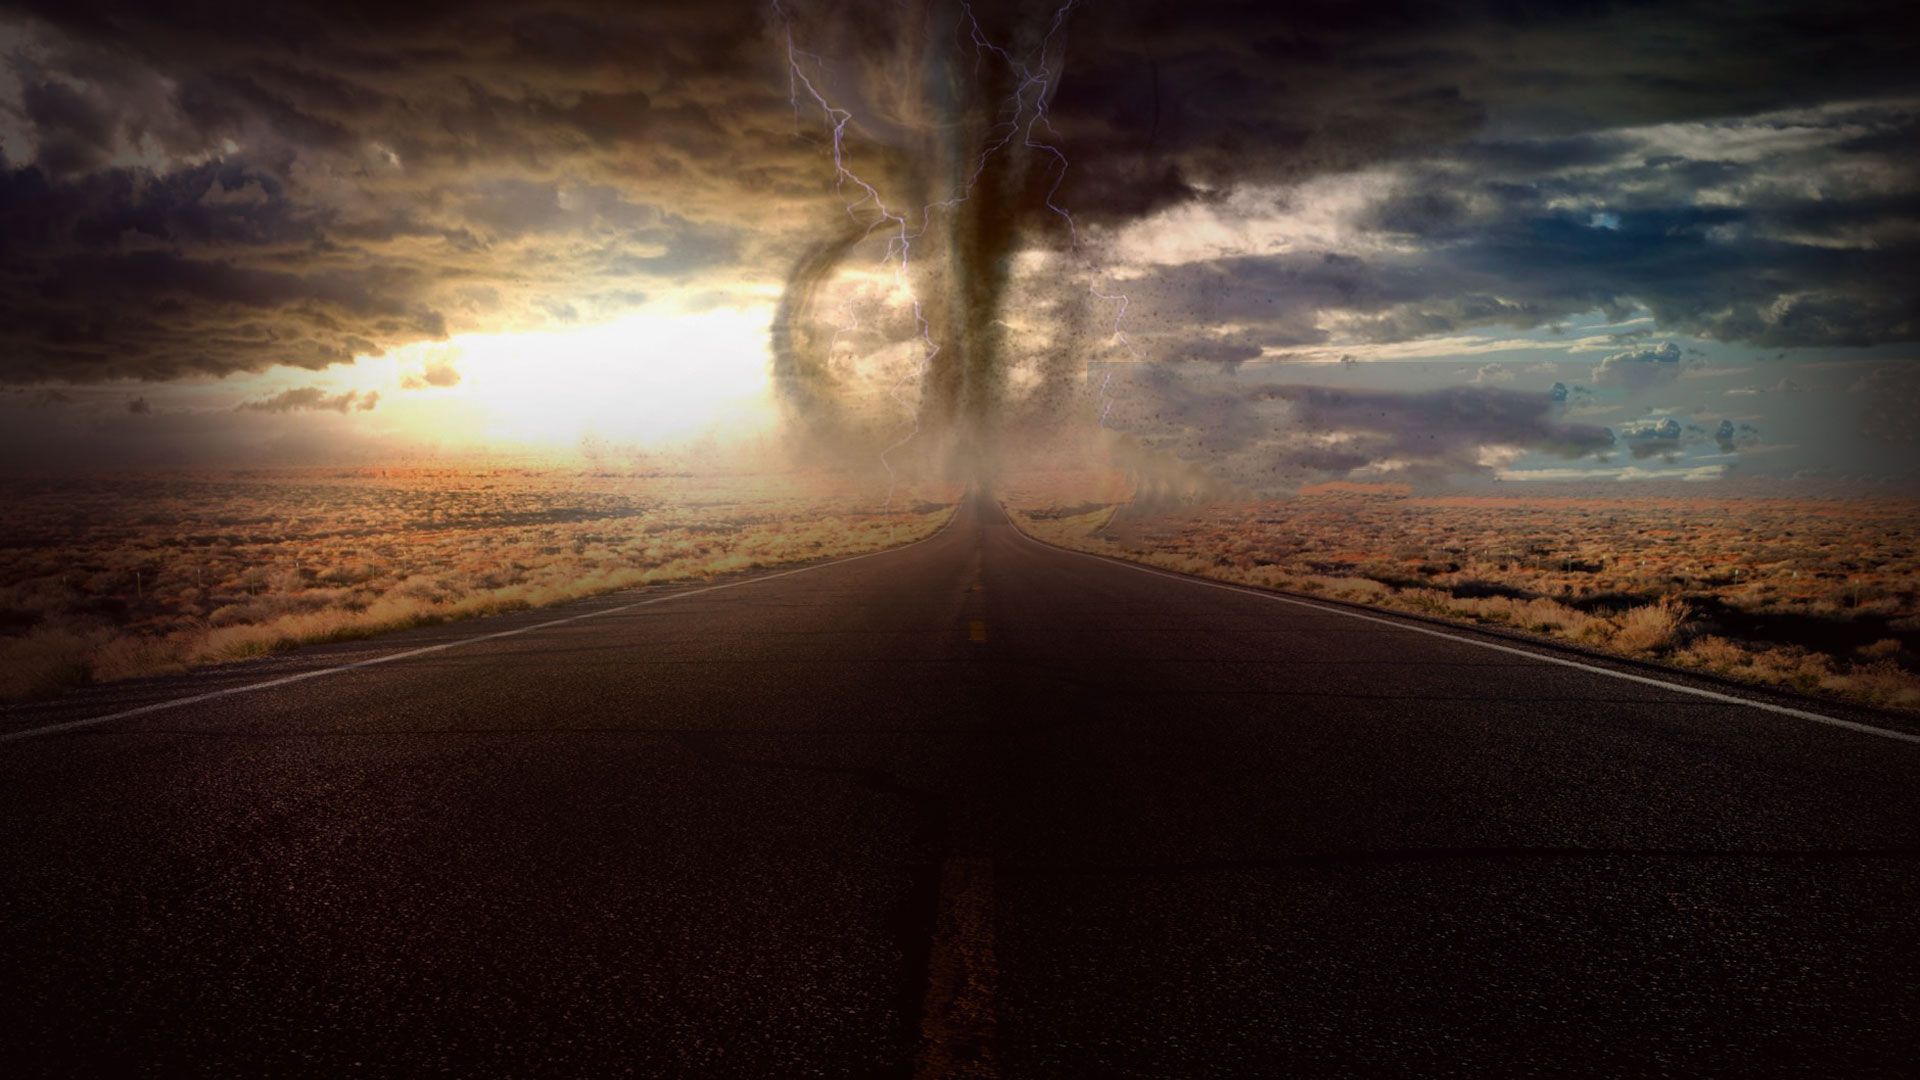 Promotional image for Если Бог хочет, чтобы все спаслись, почему путь к Нему такой тяжелый?